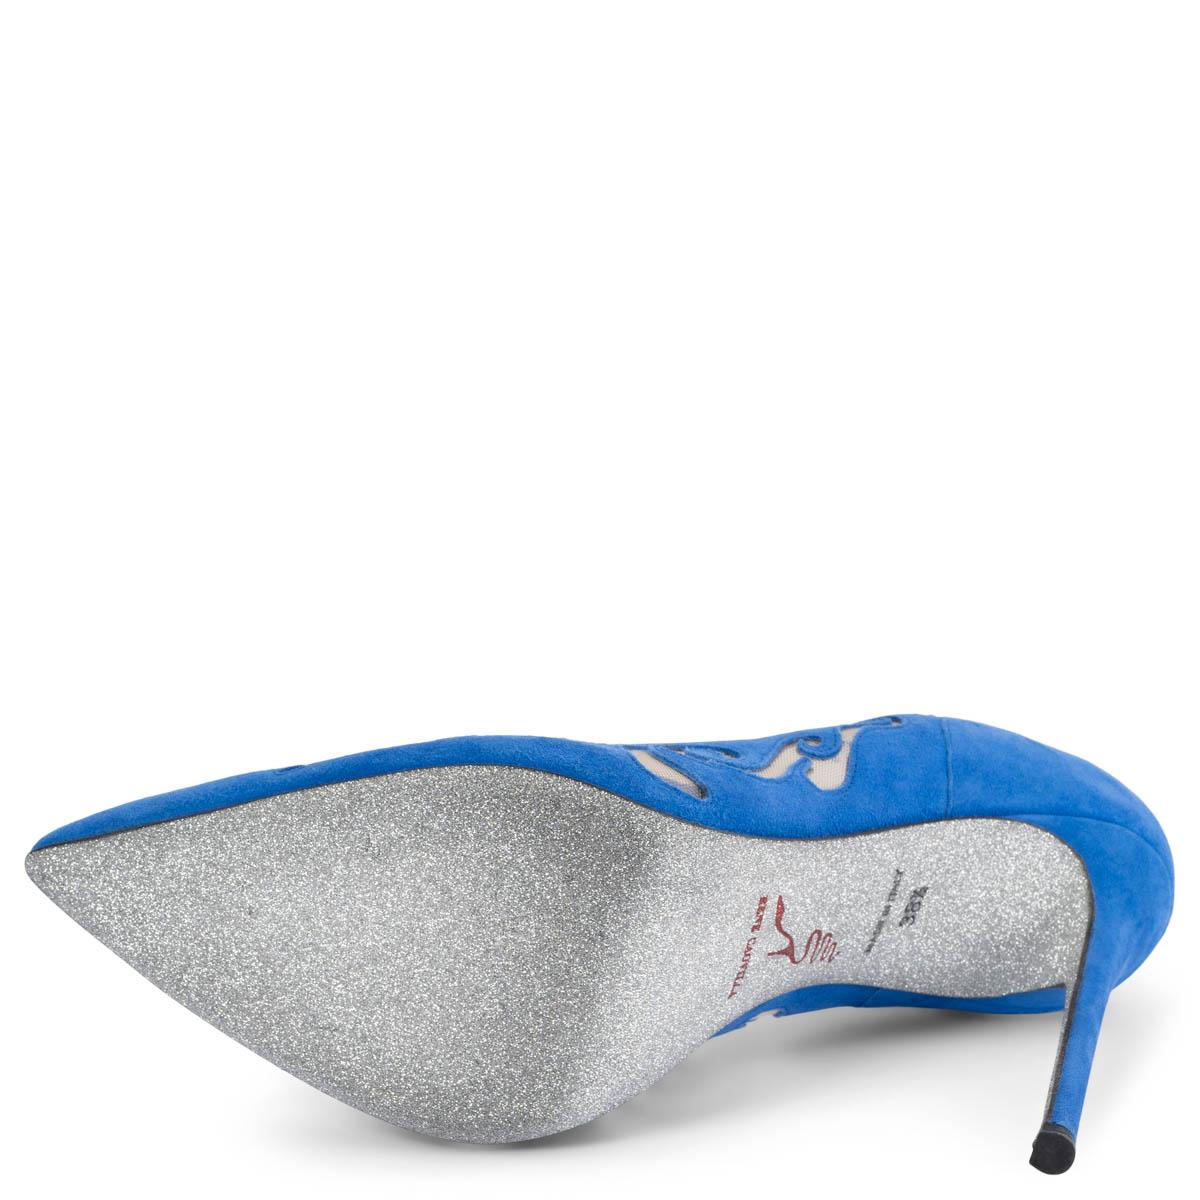 RENE CAOVILLA cobalt blue suede ILLUSION LASER-CUT Pumps Shoes 38.5 For Sale 1